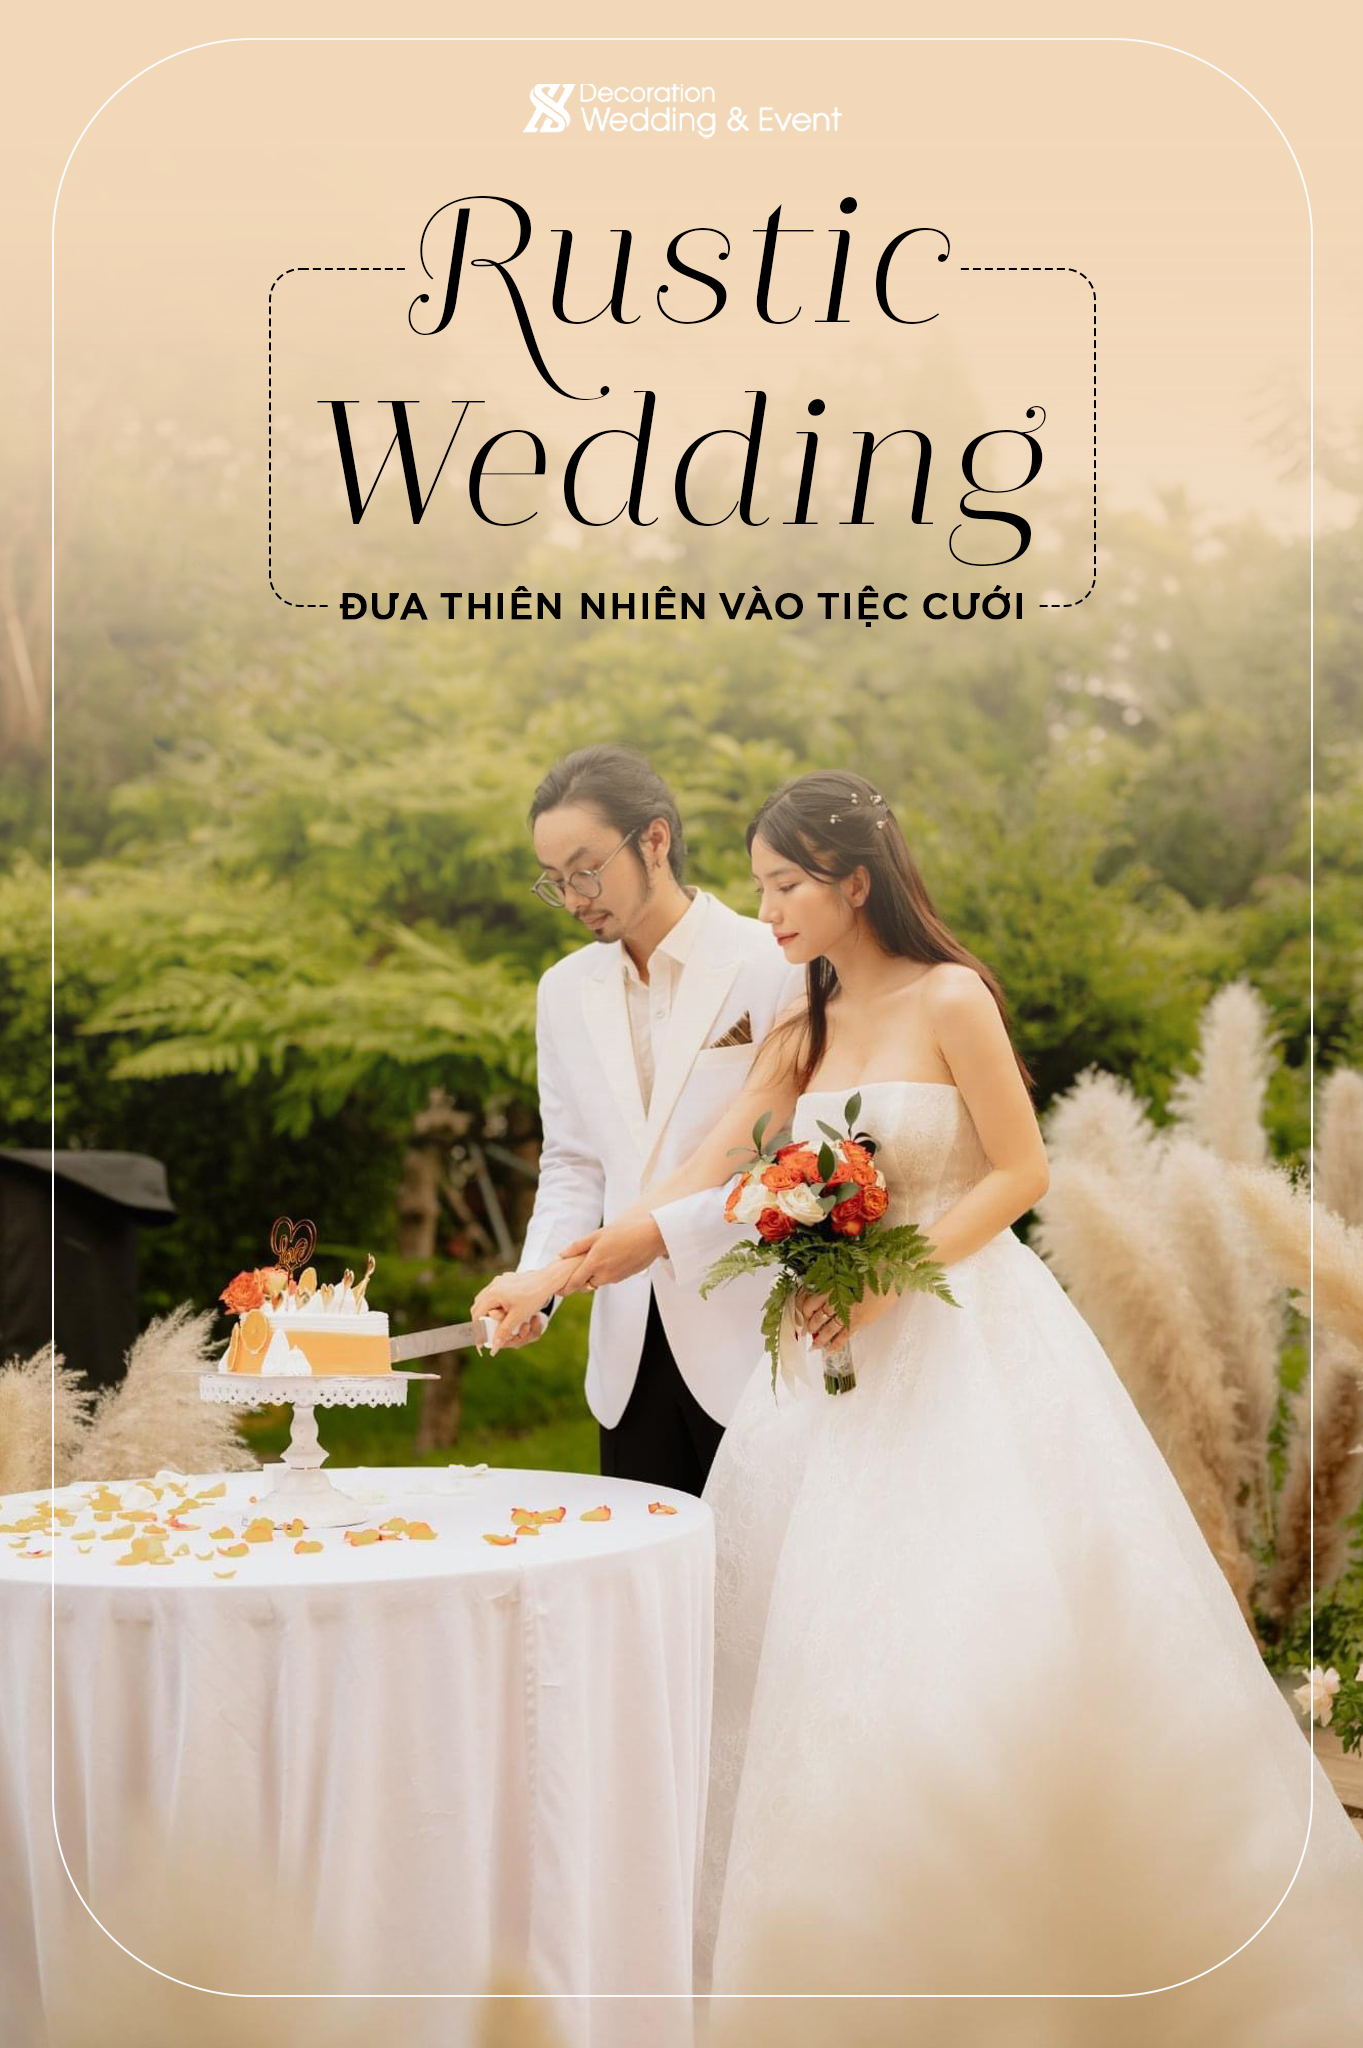 Rustic Wedding: Đưa thiên nhiên vào trong tiệc cưới